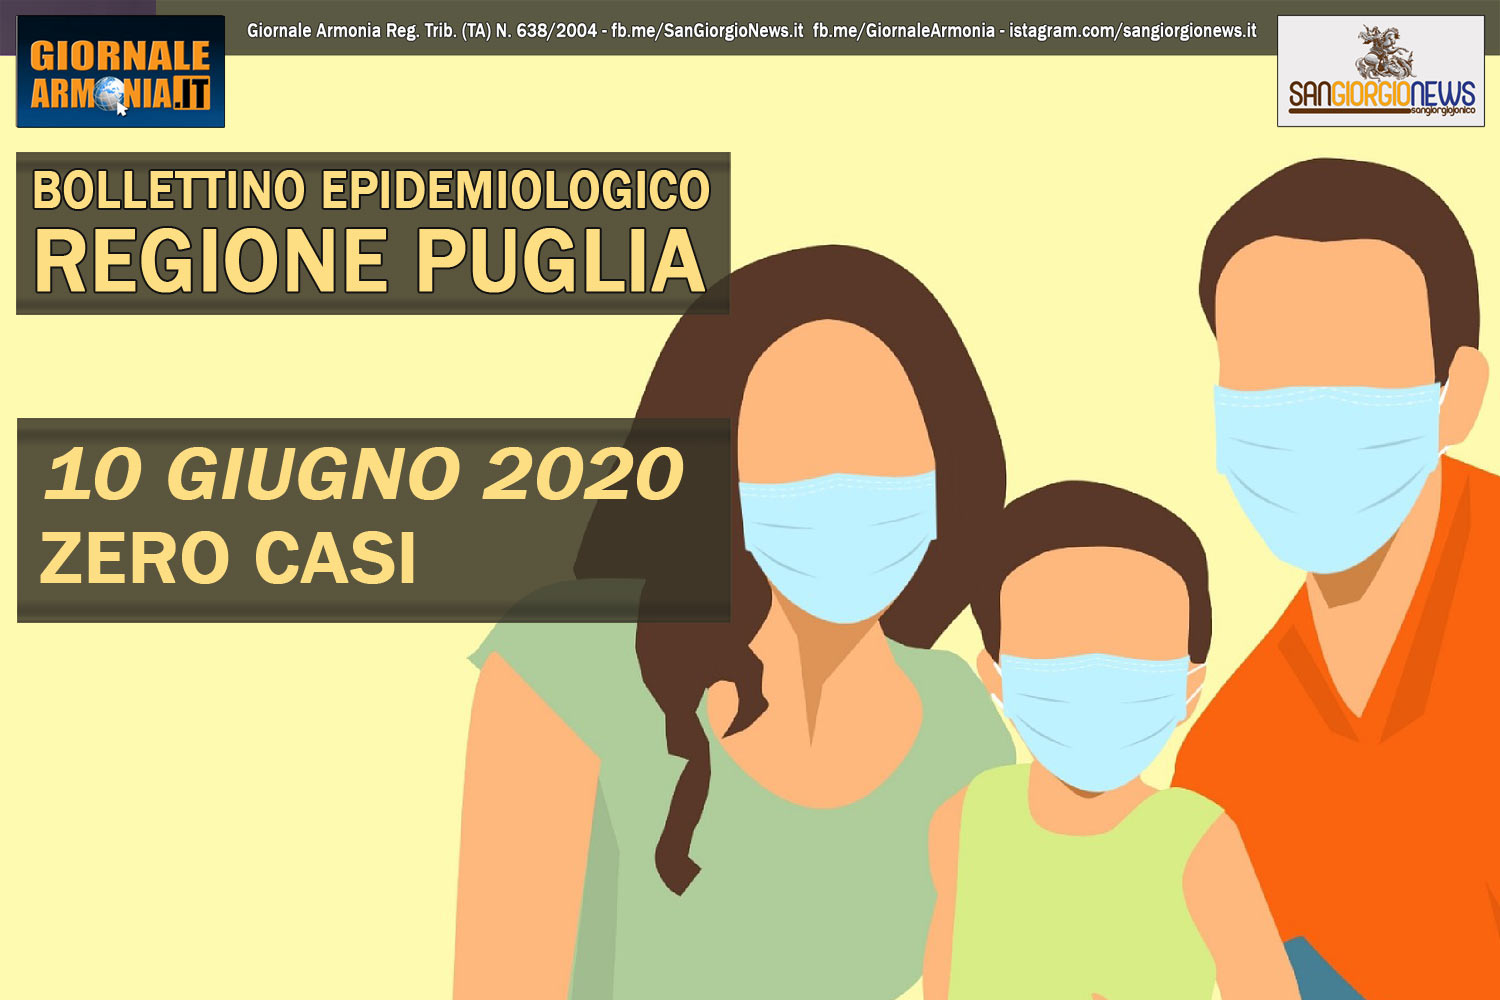 10 GIUGNO 2020 - BOLLETTINO EPIDEMIOLOGICO REGIONE PUGLIA